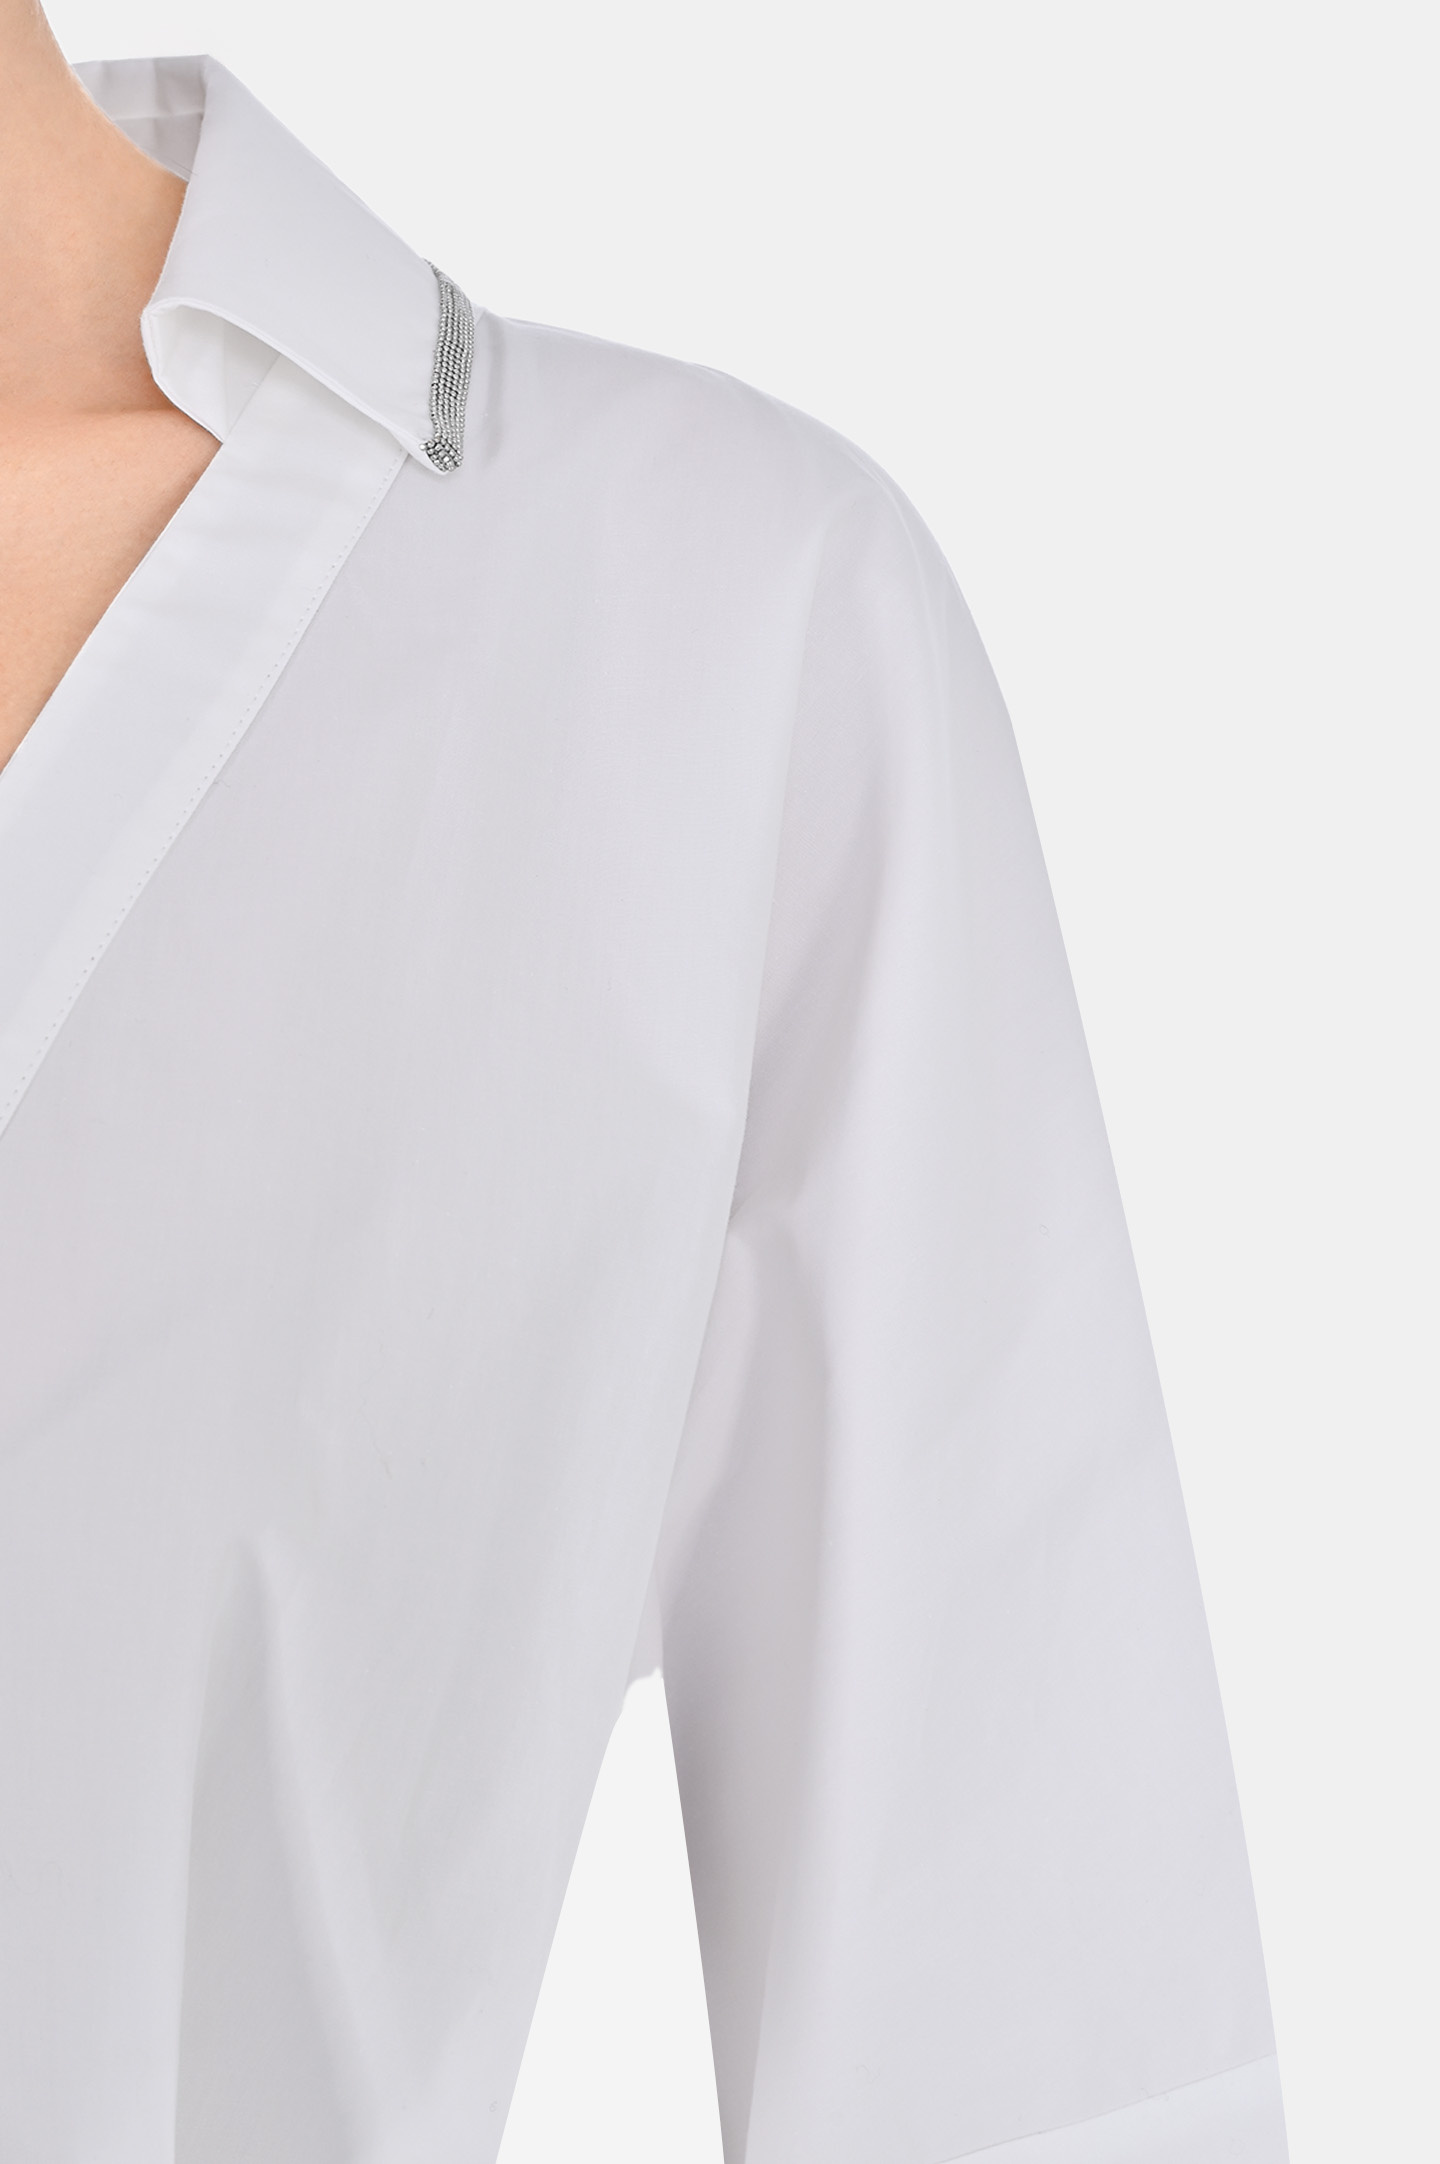 Рубашка FABIANA FILIPPI CAD213F232D549, цвет: Белый, Женский